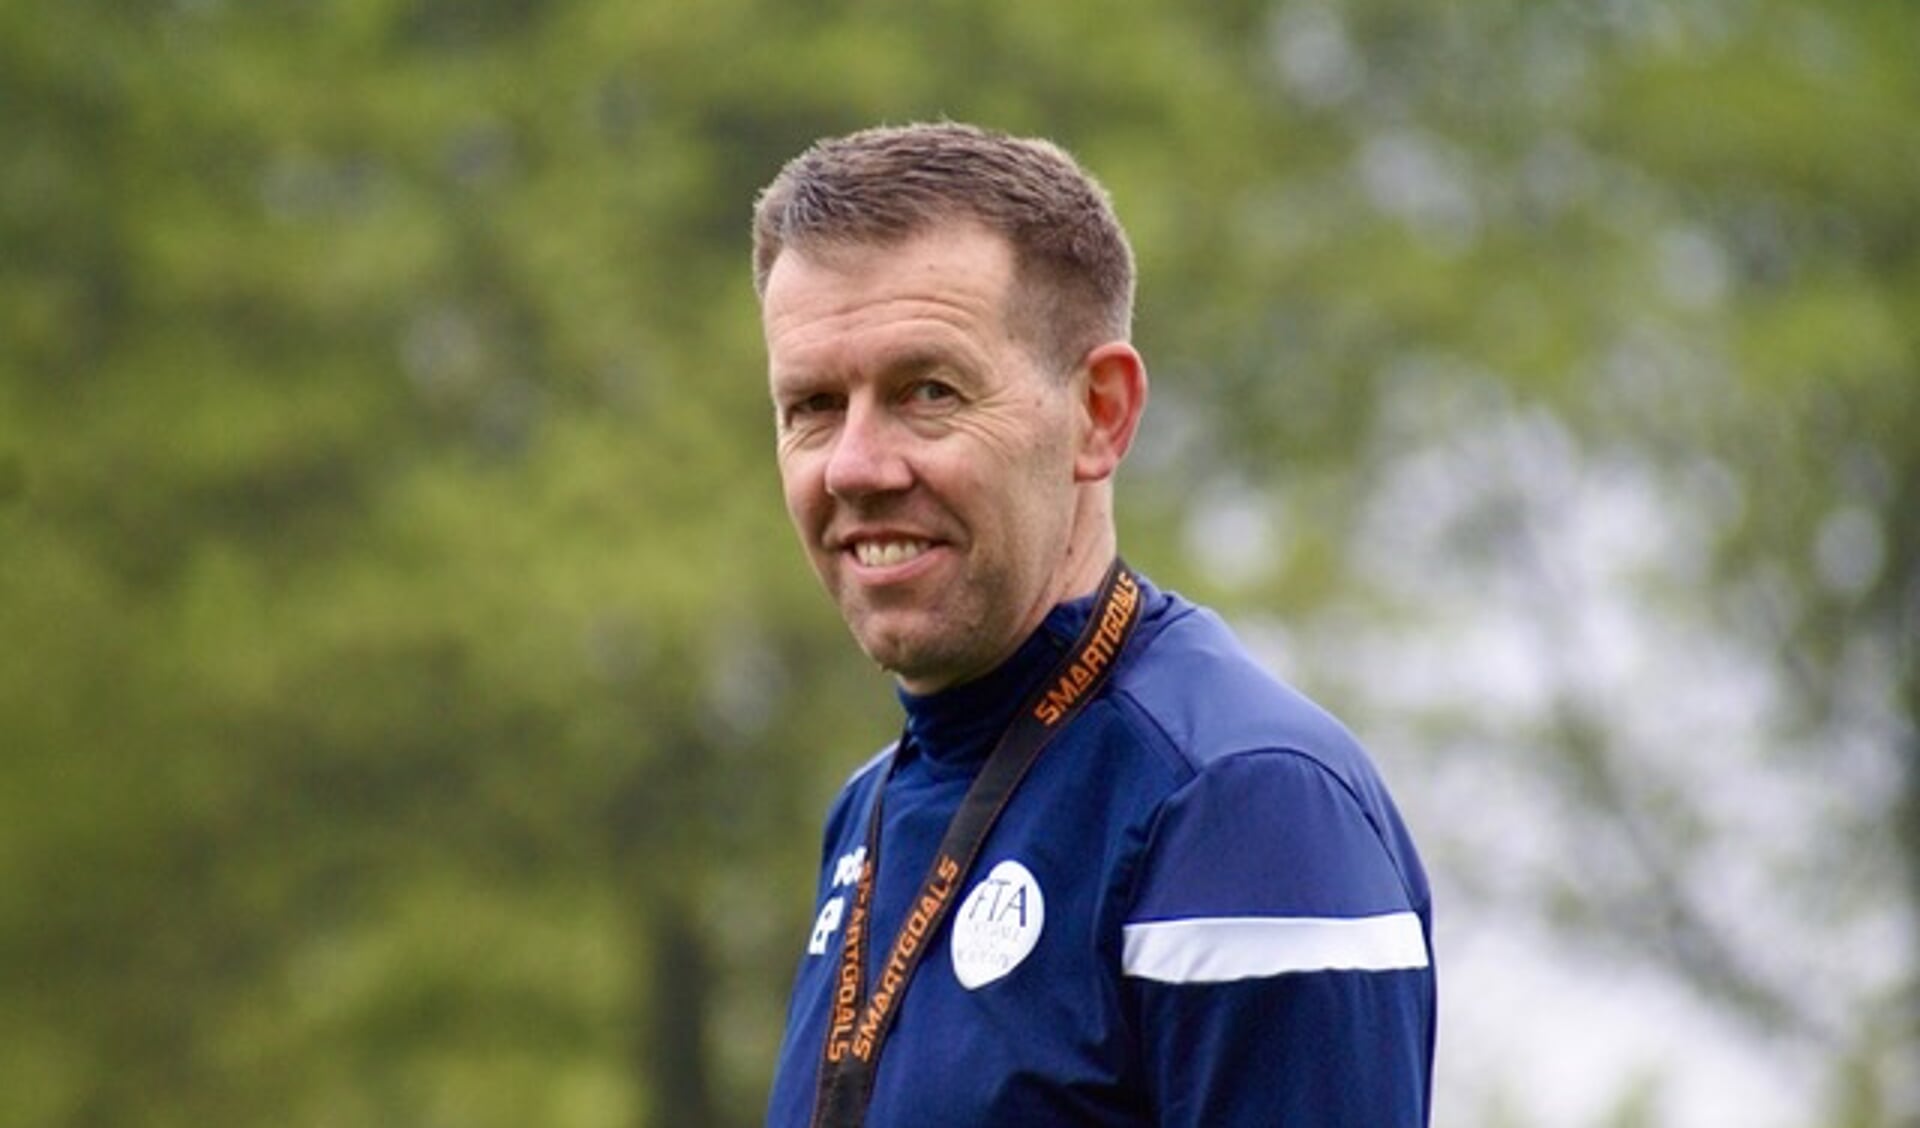 Edwin Peters gaat na de zomer fulltime aan de slag bij Vitesse Arnhem, maar blijft zijn nieuwe functie combineren met het hoofdtrainerschap bij Festilent. (foto: Monique Schippers)